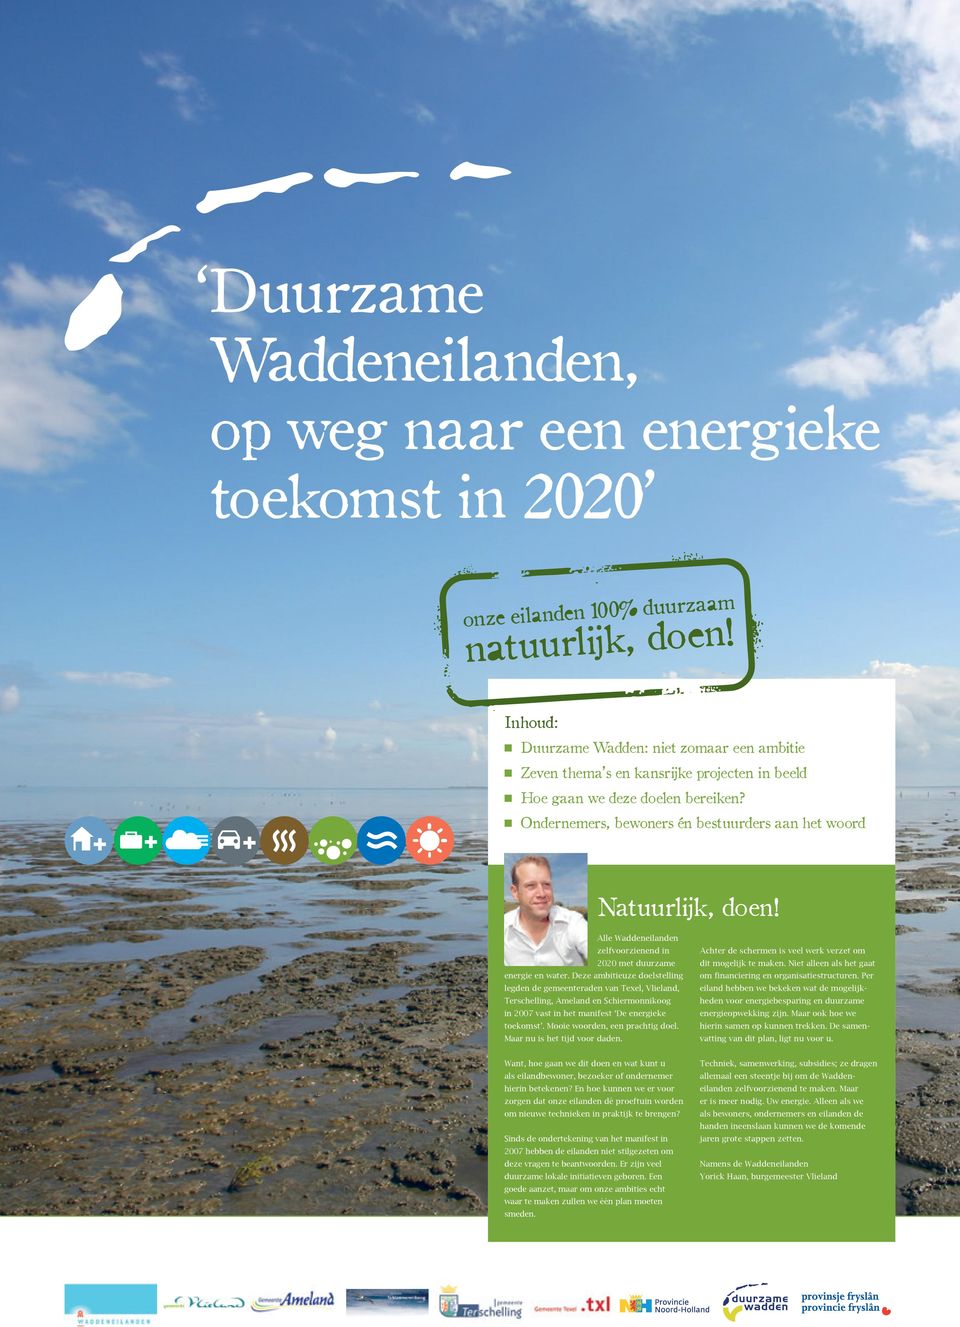 Deze ambitieuze doelstelling legden de gemeente raden van Texel, Vlieland, Terschelling, Ameland en Schiermonnikoog in 2007 vast in het manifest De energieke toe komst.